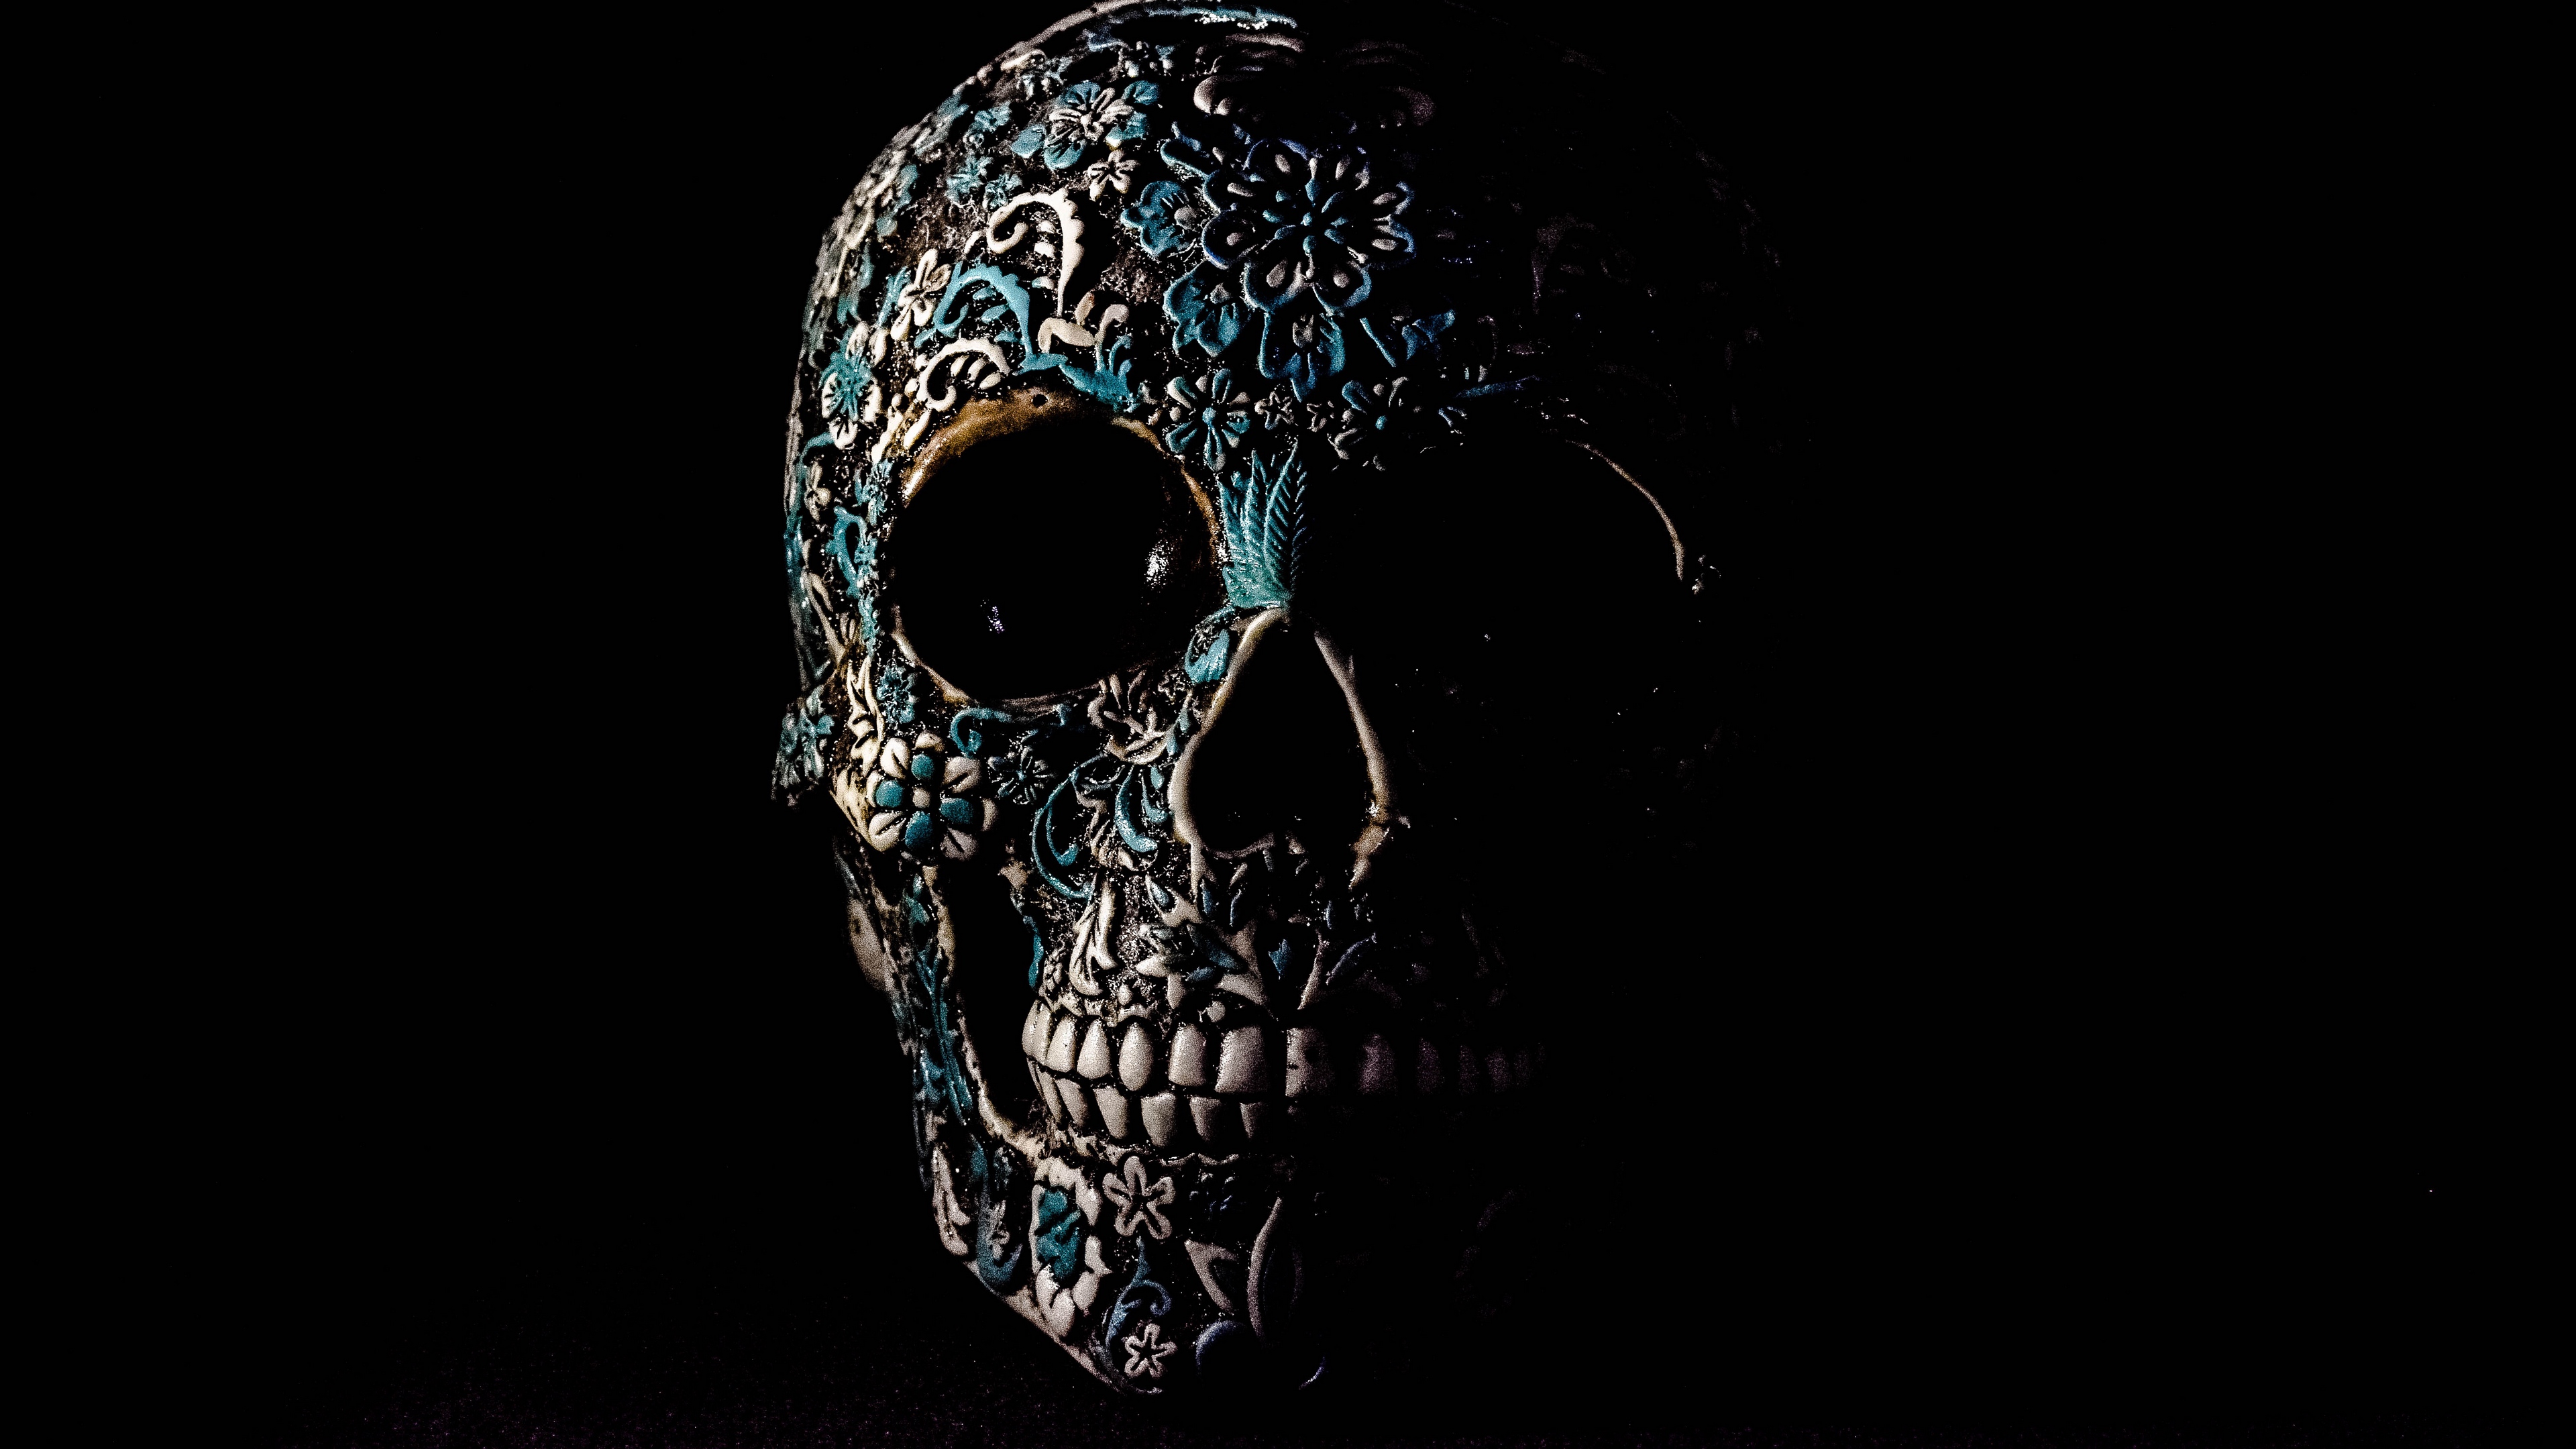 General 3840x2160 skull artwork dark 3D Abstract CGI black blue Sugar Skull digital art simple background